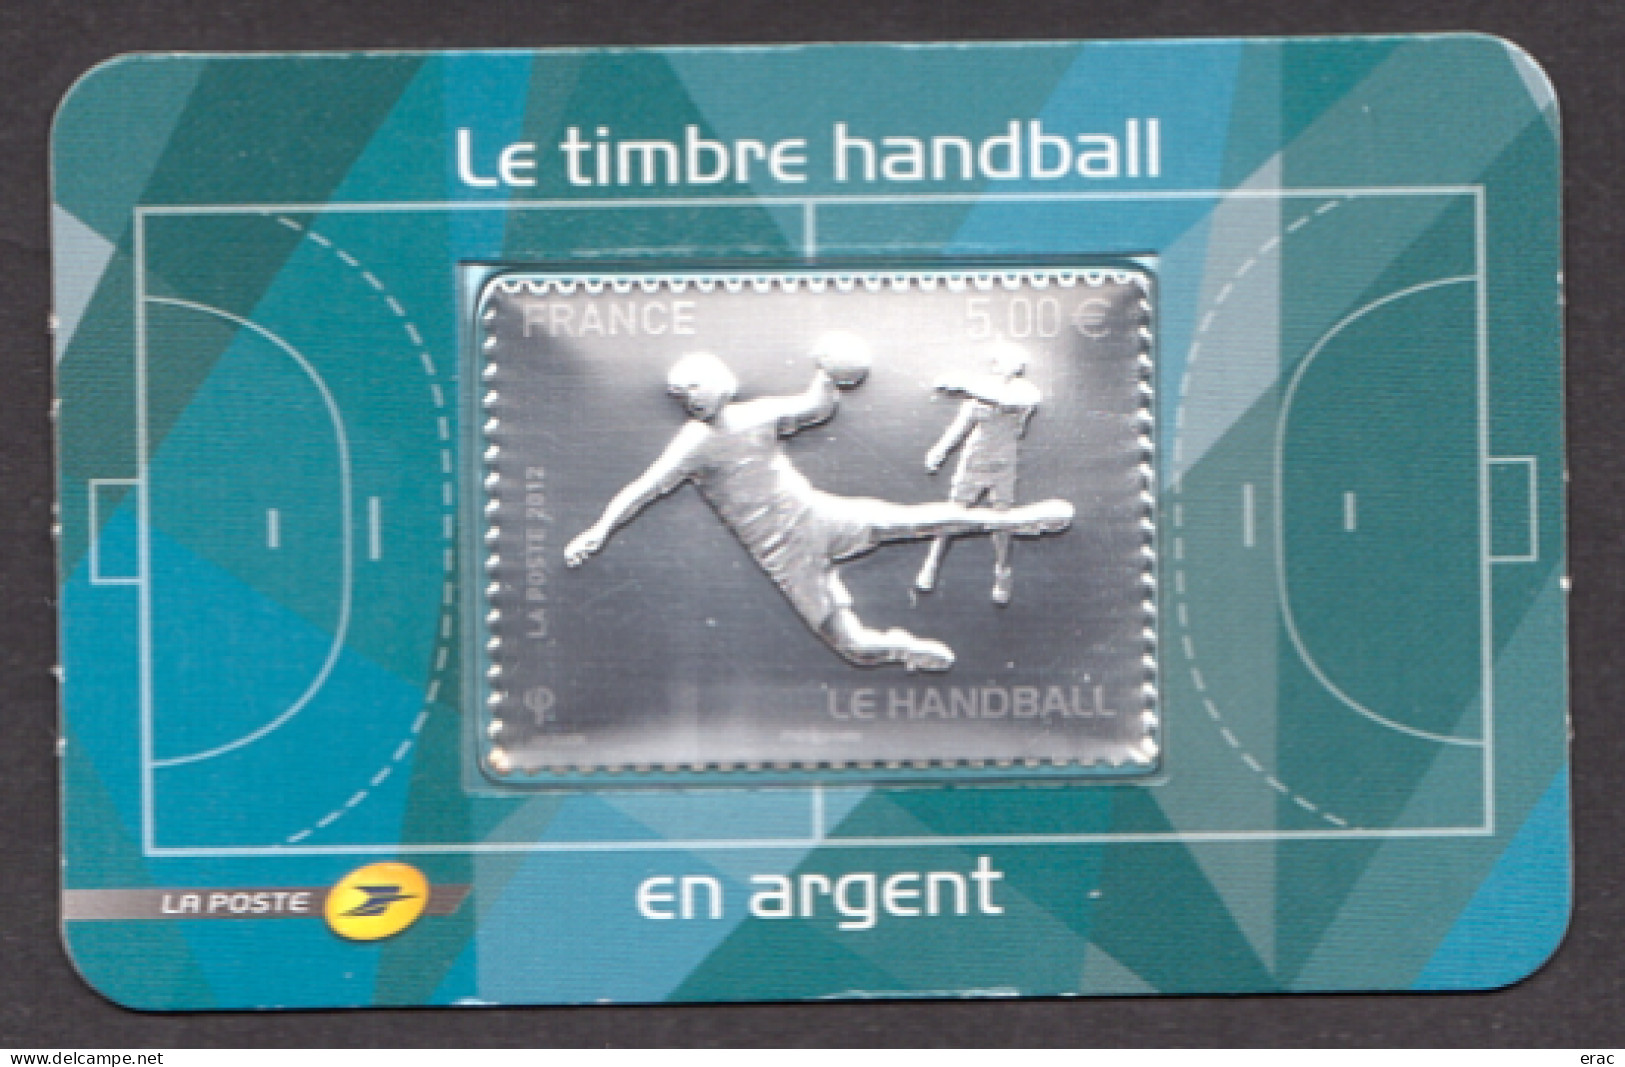 France - 2012 - Autoadhésif N° 738 - Neuf ** - Le Handball - Timbre Argent Sous Blister Cartonné - Unused Stamps